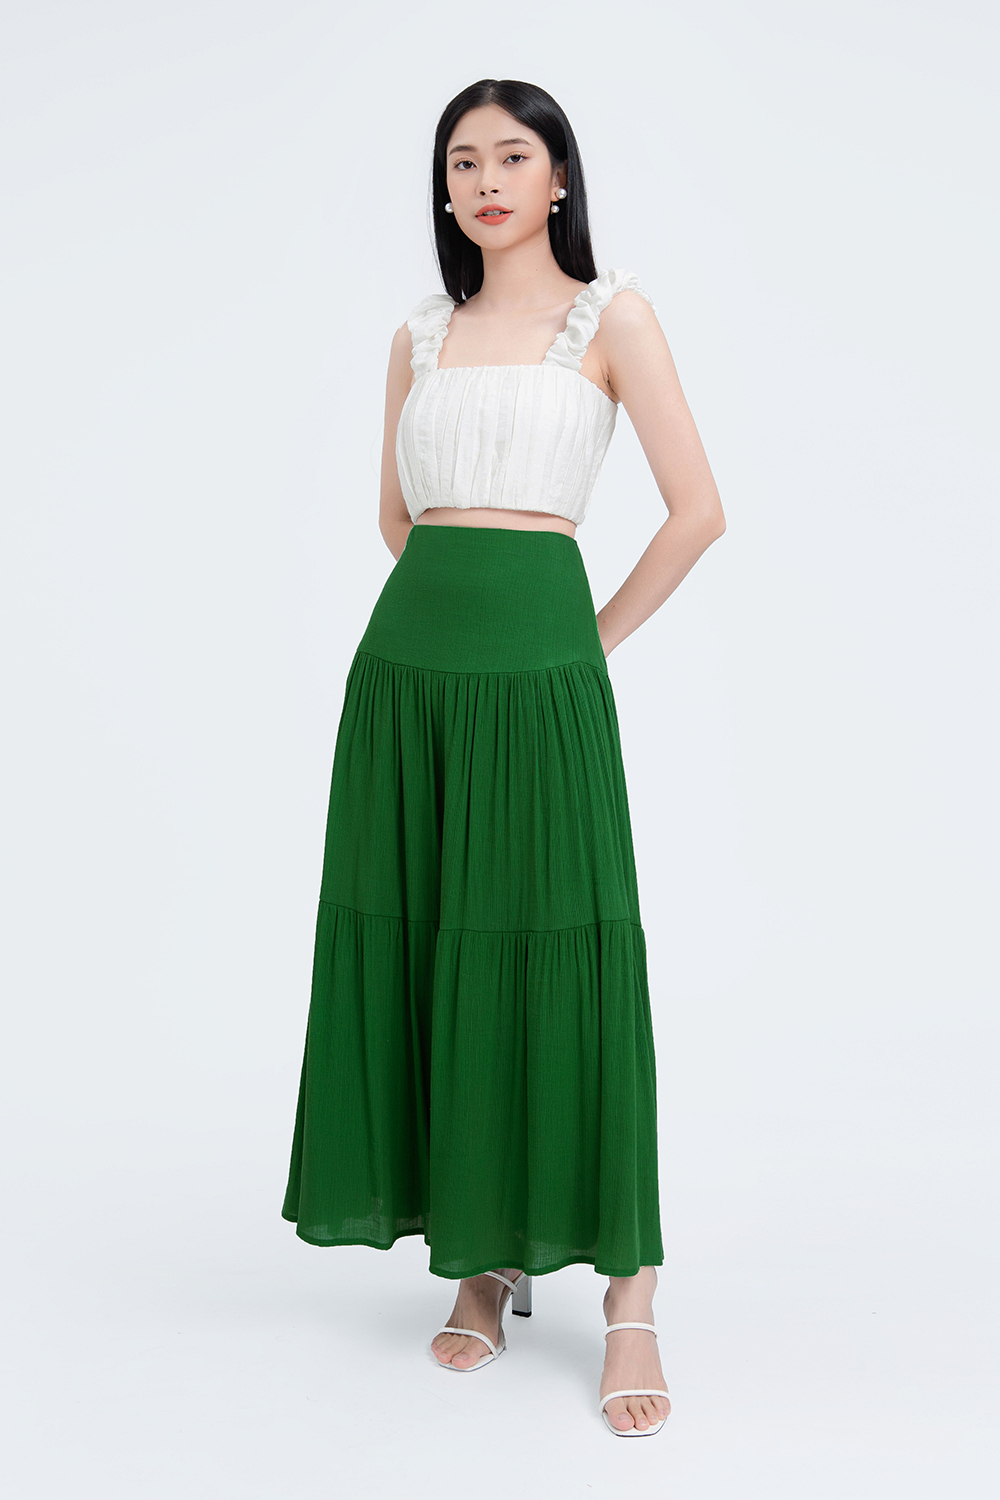 Mua Chân váy Midi dài Voan hoa Thiết kế Lưng cao Dáng chữ A Ulzzang Hàn  Quốc Chân váy Voan hoa Midi dài Cạp cao Thời trang  Tiki